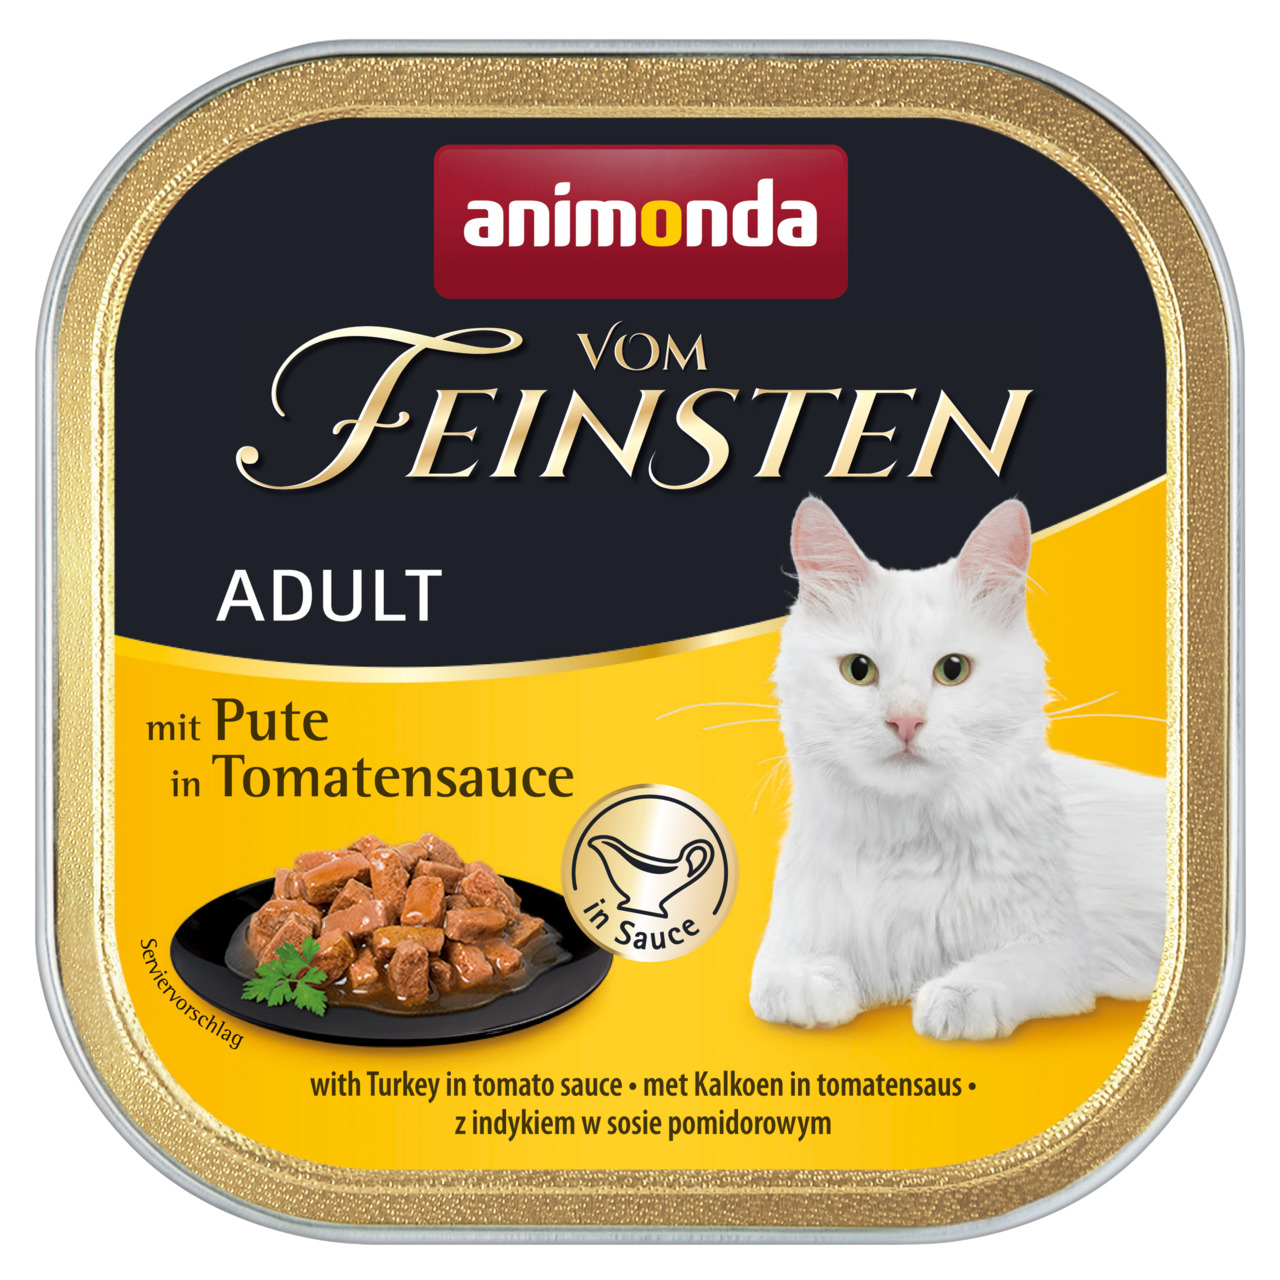 Animonda vom Feinsten Adult mit Pute in Tomatensauce Katzen Nassfutter 100 g